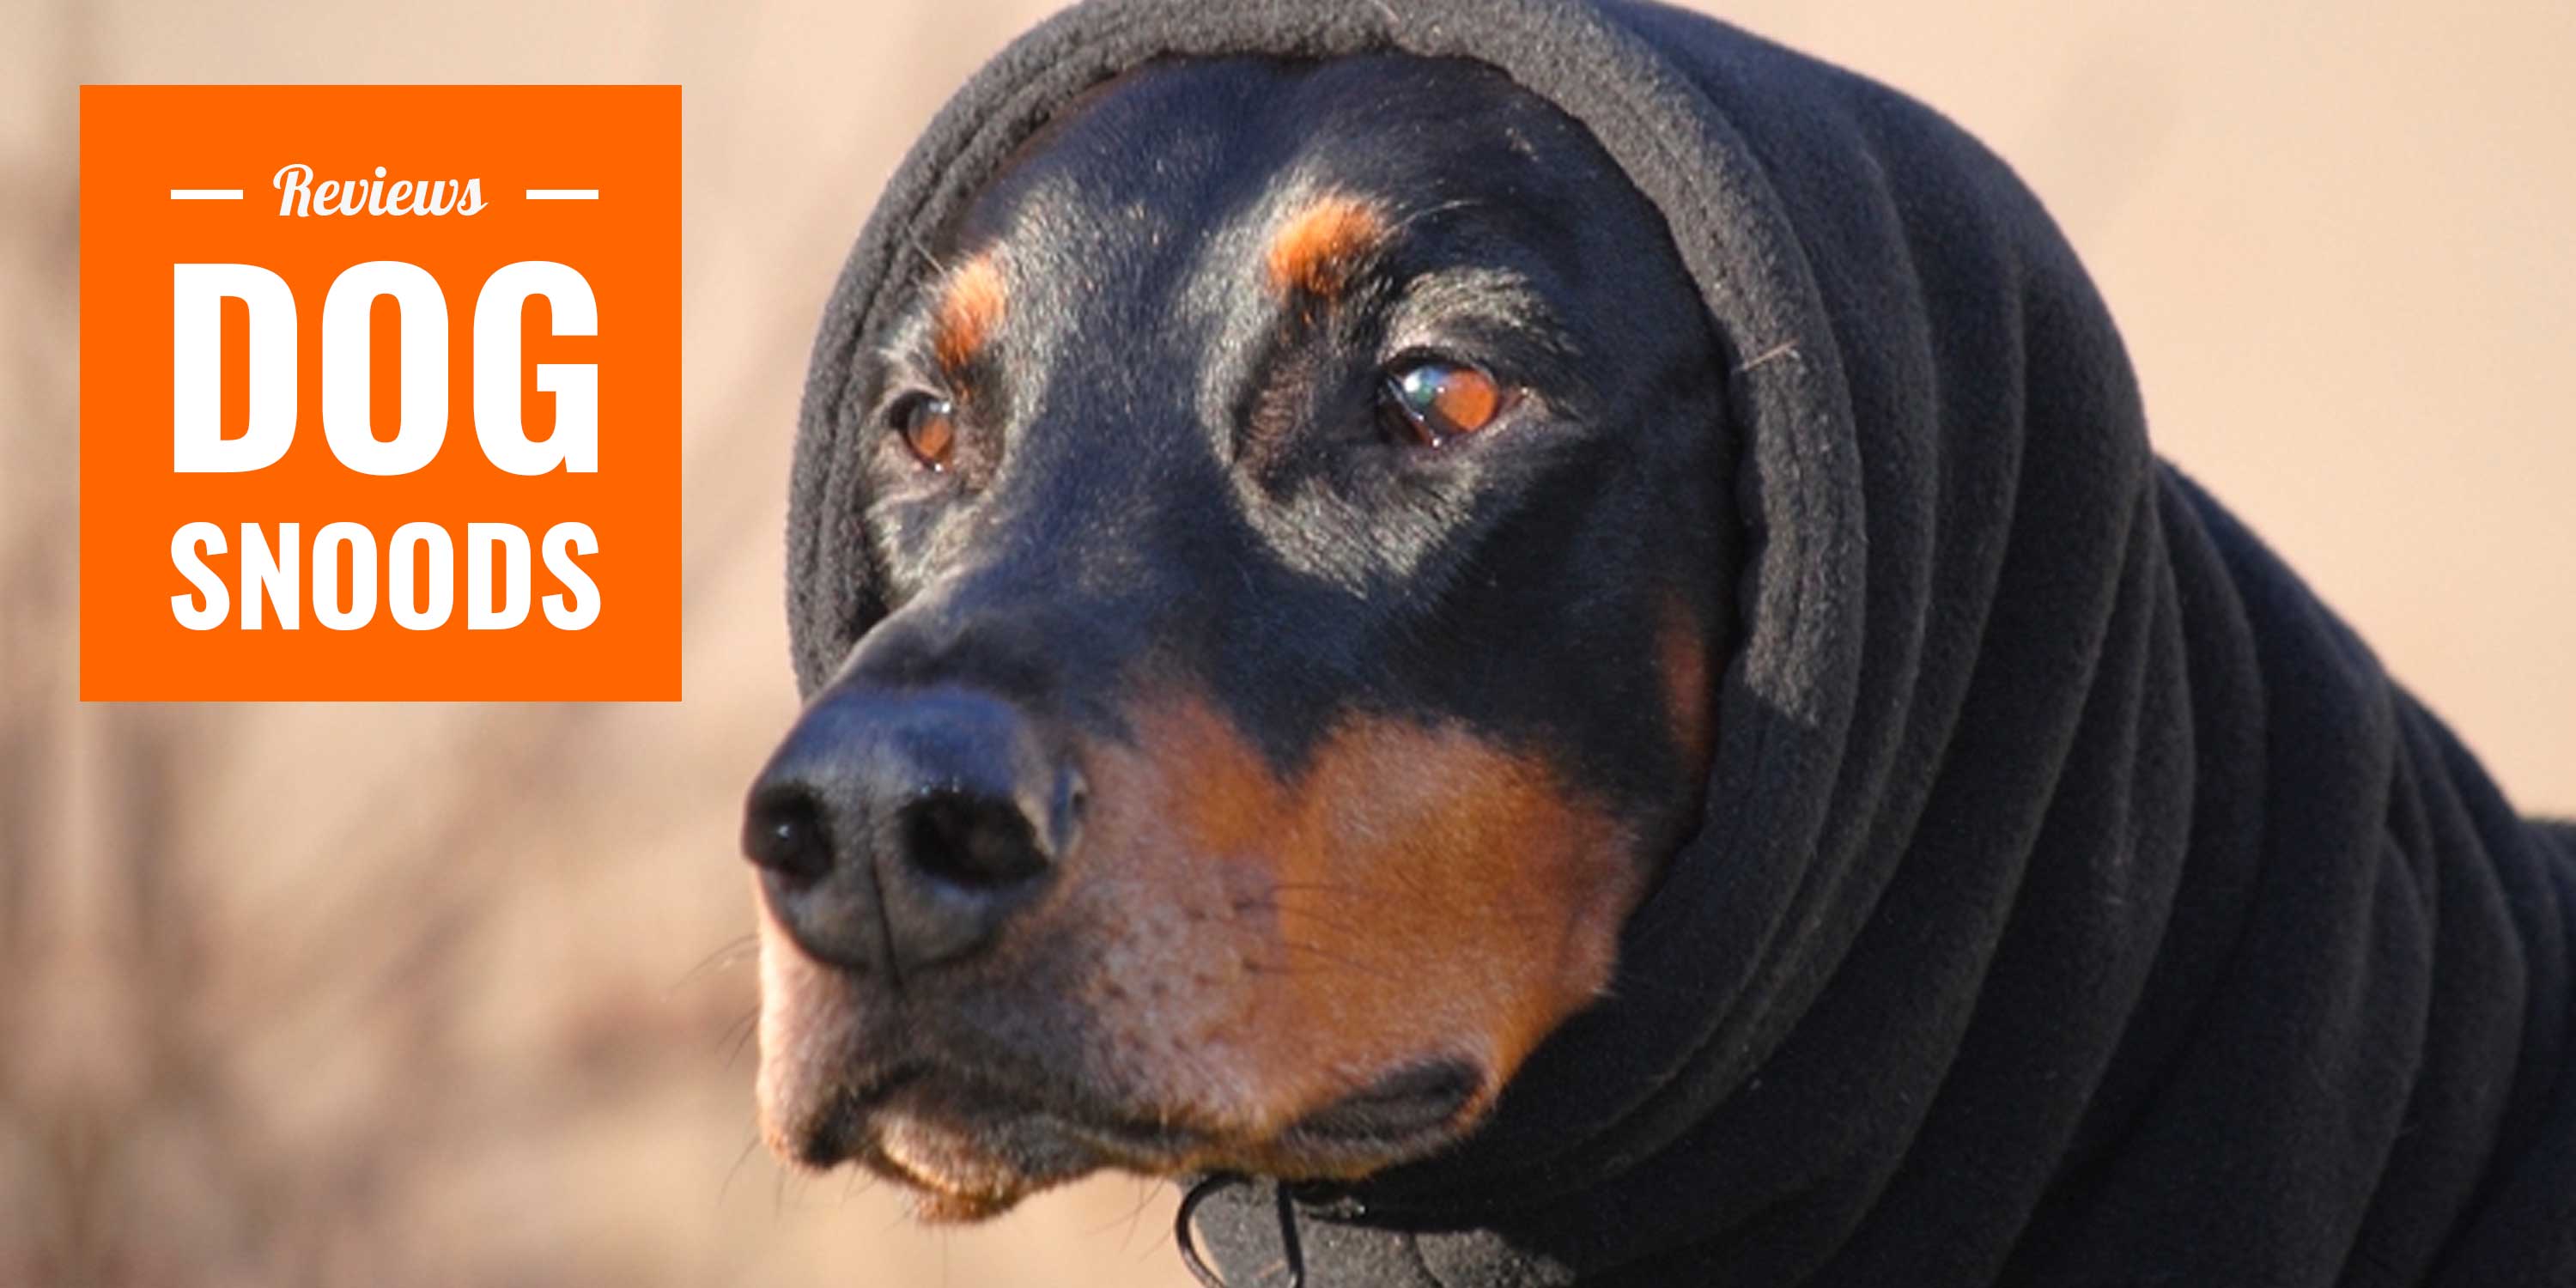 warm neck scarf w drawstring /& leash hole; ear warmer neckwarmer cowl; infinity muffler Dog snood